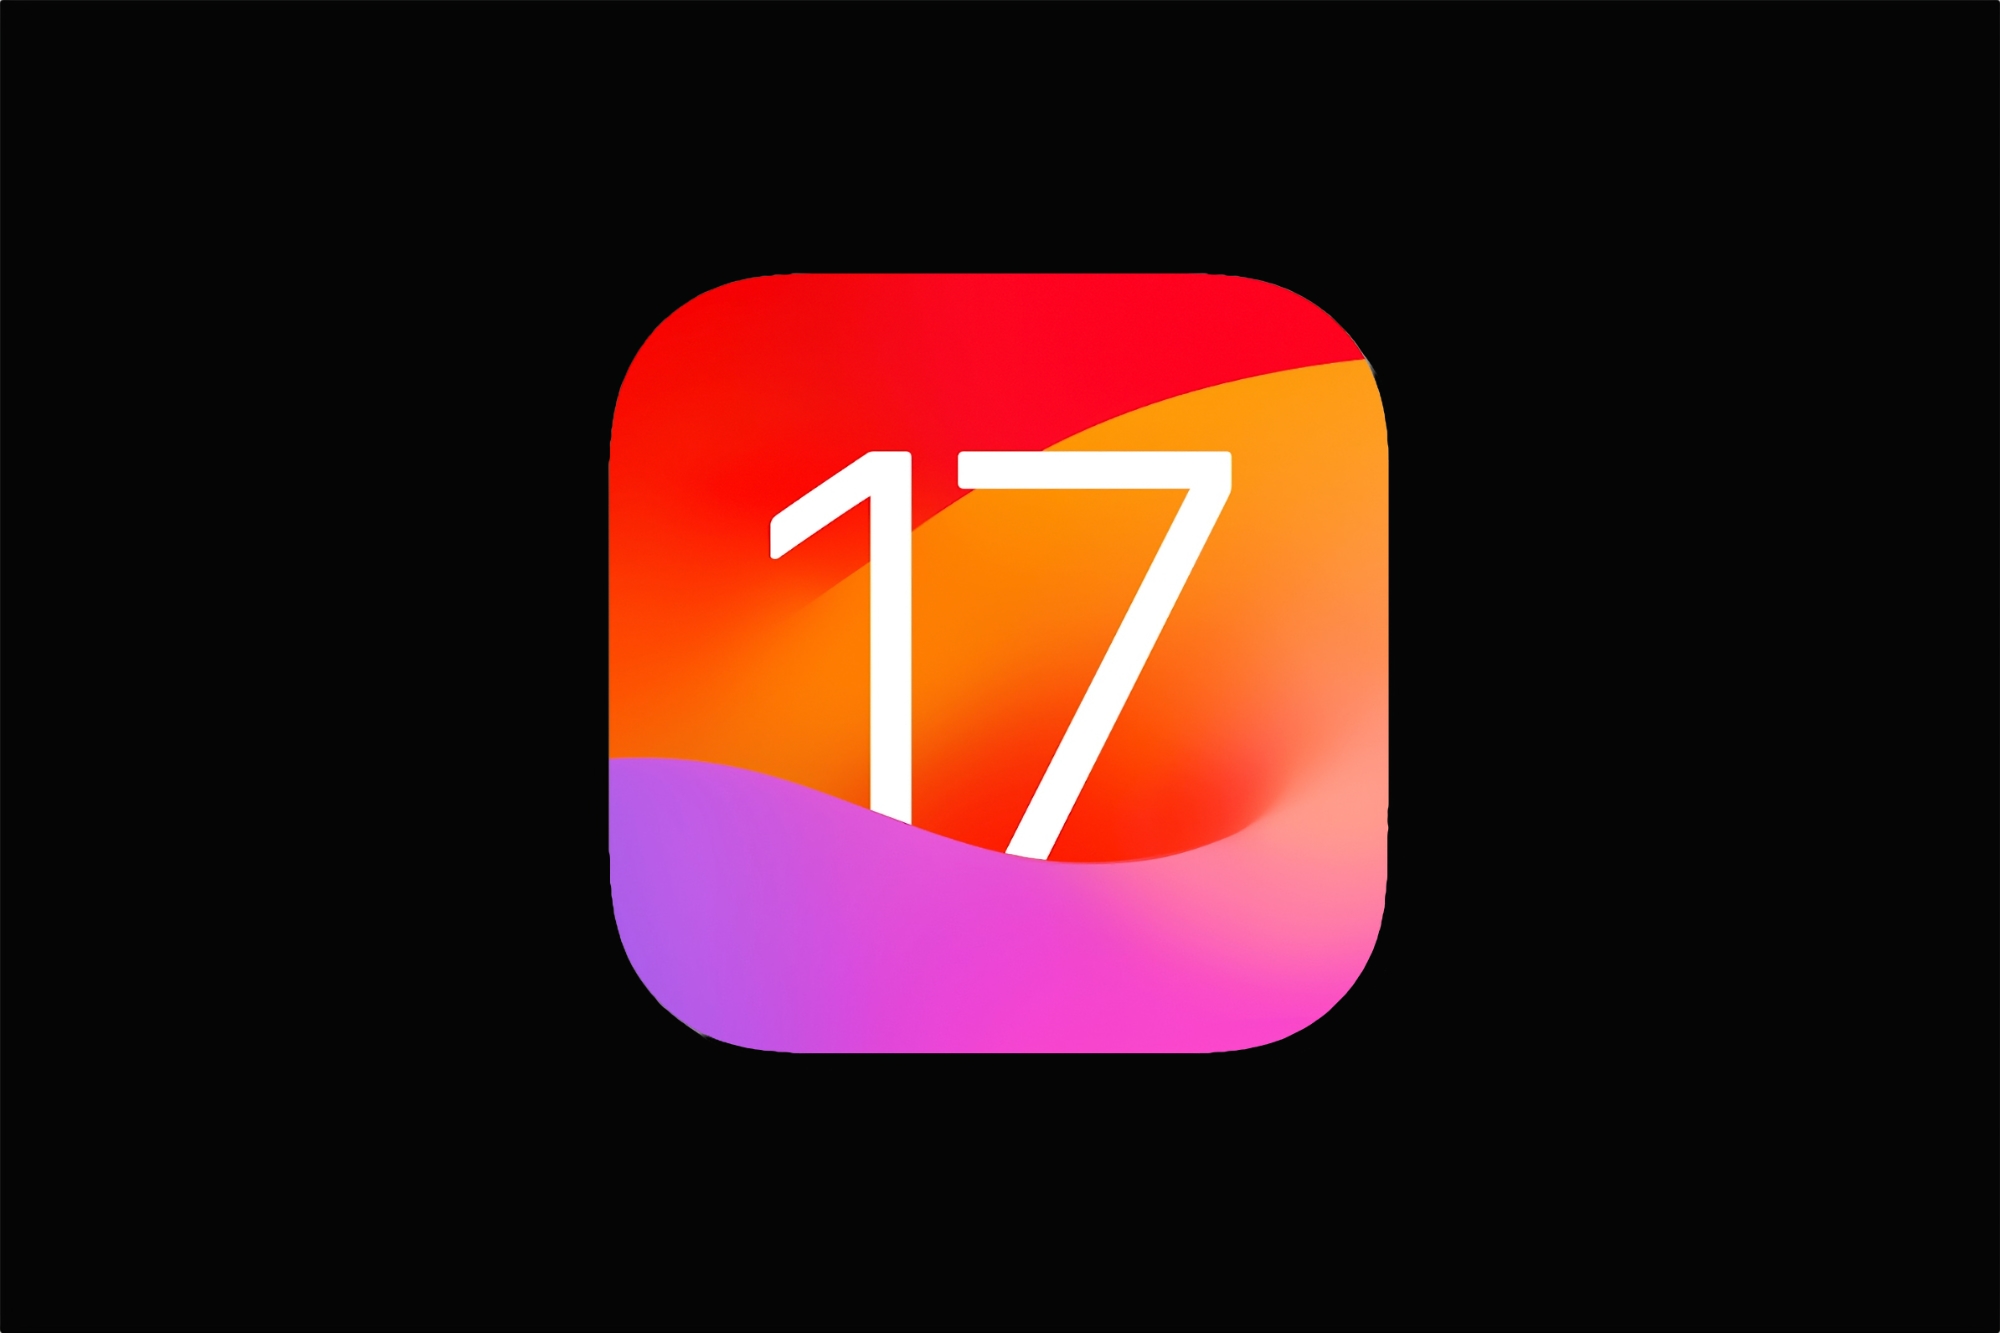 Apple veröffentlicht erste Beta-Versionen von iOS 17 und iPadOS 17